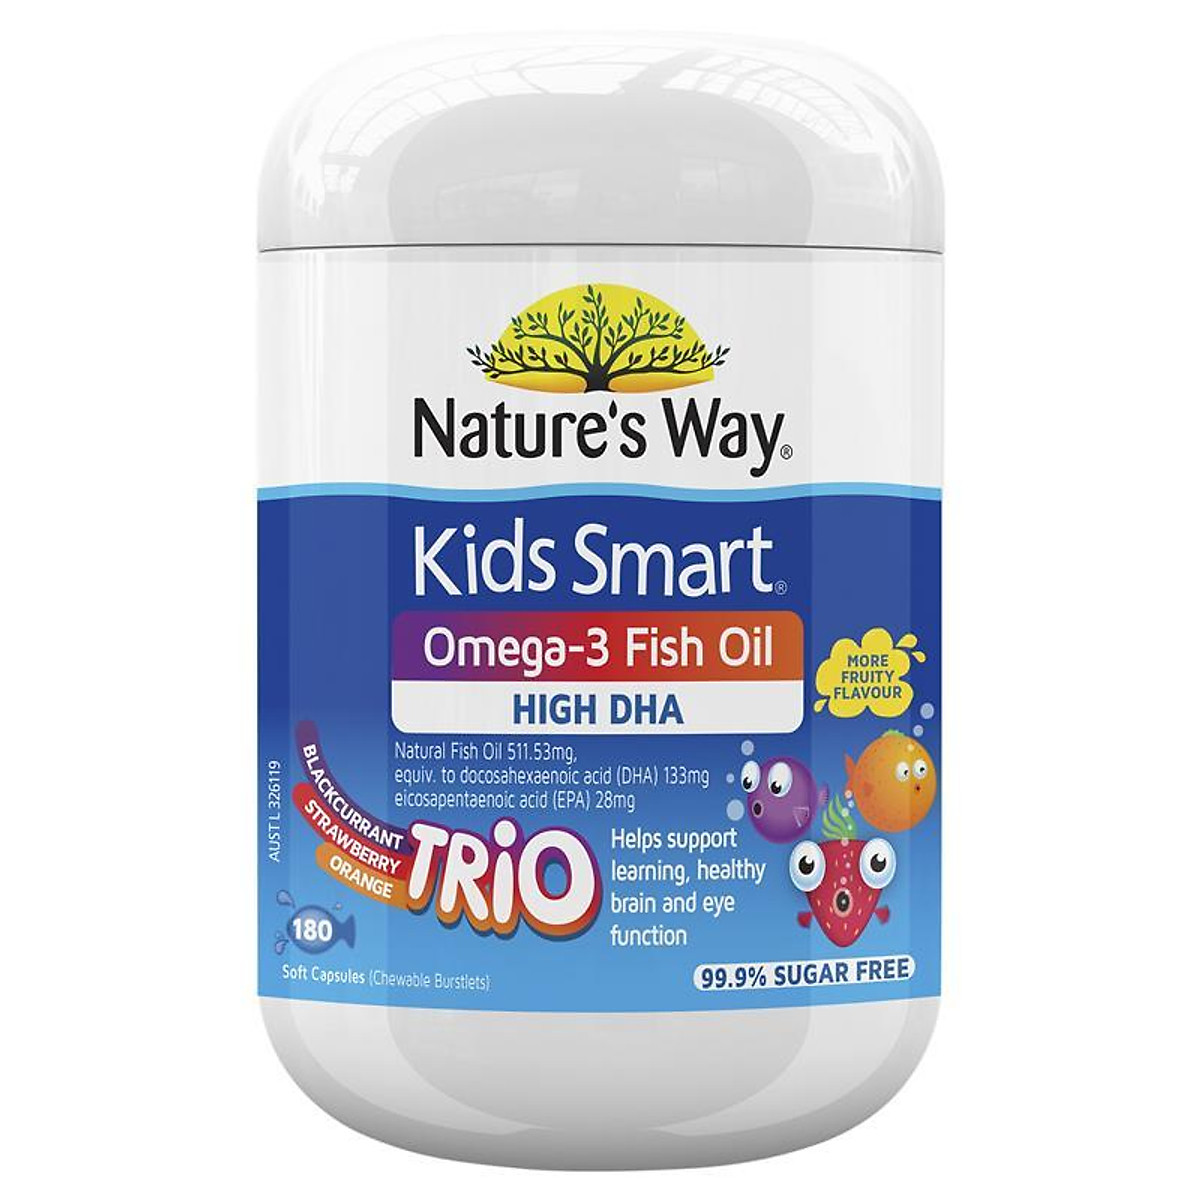 Viên kẹo Nature’s Way Kids Smart Bursts Omega 3 Fish oil Trio, Úc bổ sung DHA cho trẻ từ 12 tháng tuổi